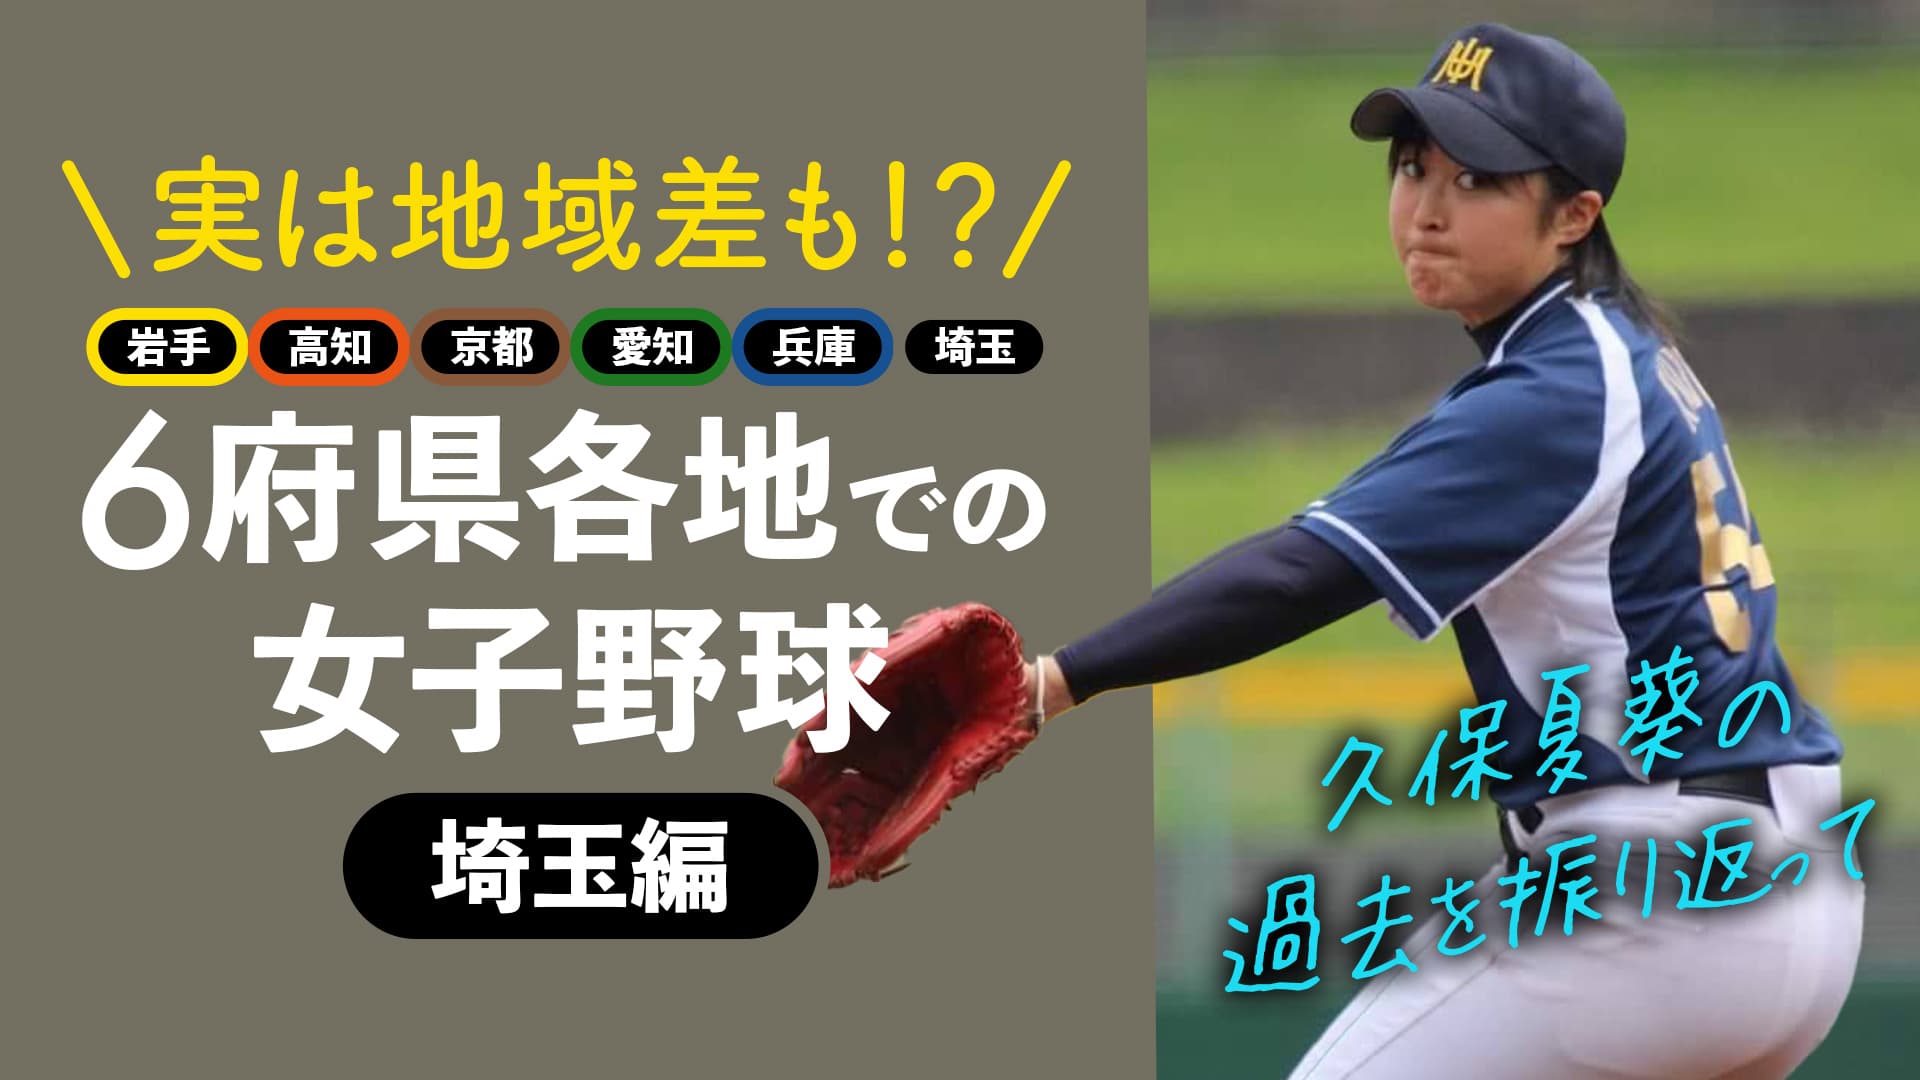 【埼玉編】6府県で女子野球を経験した久保夏葵が各地で感じたこと